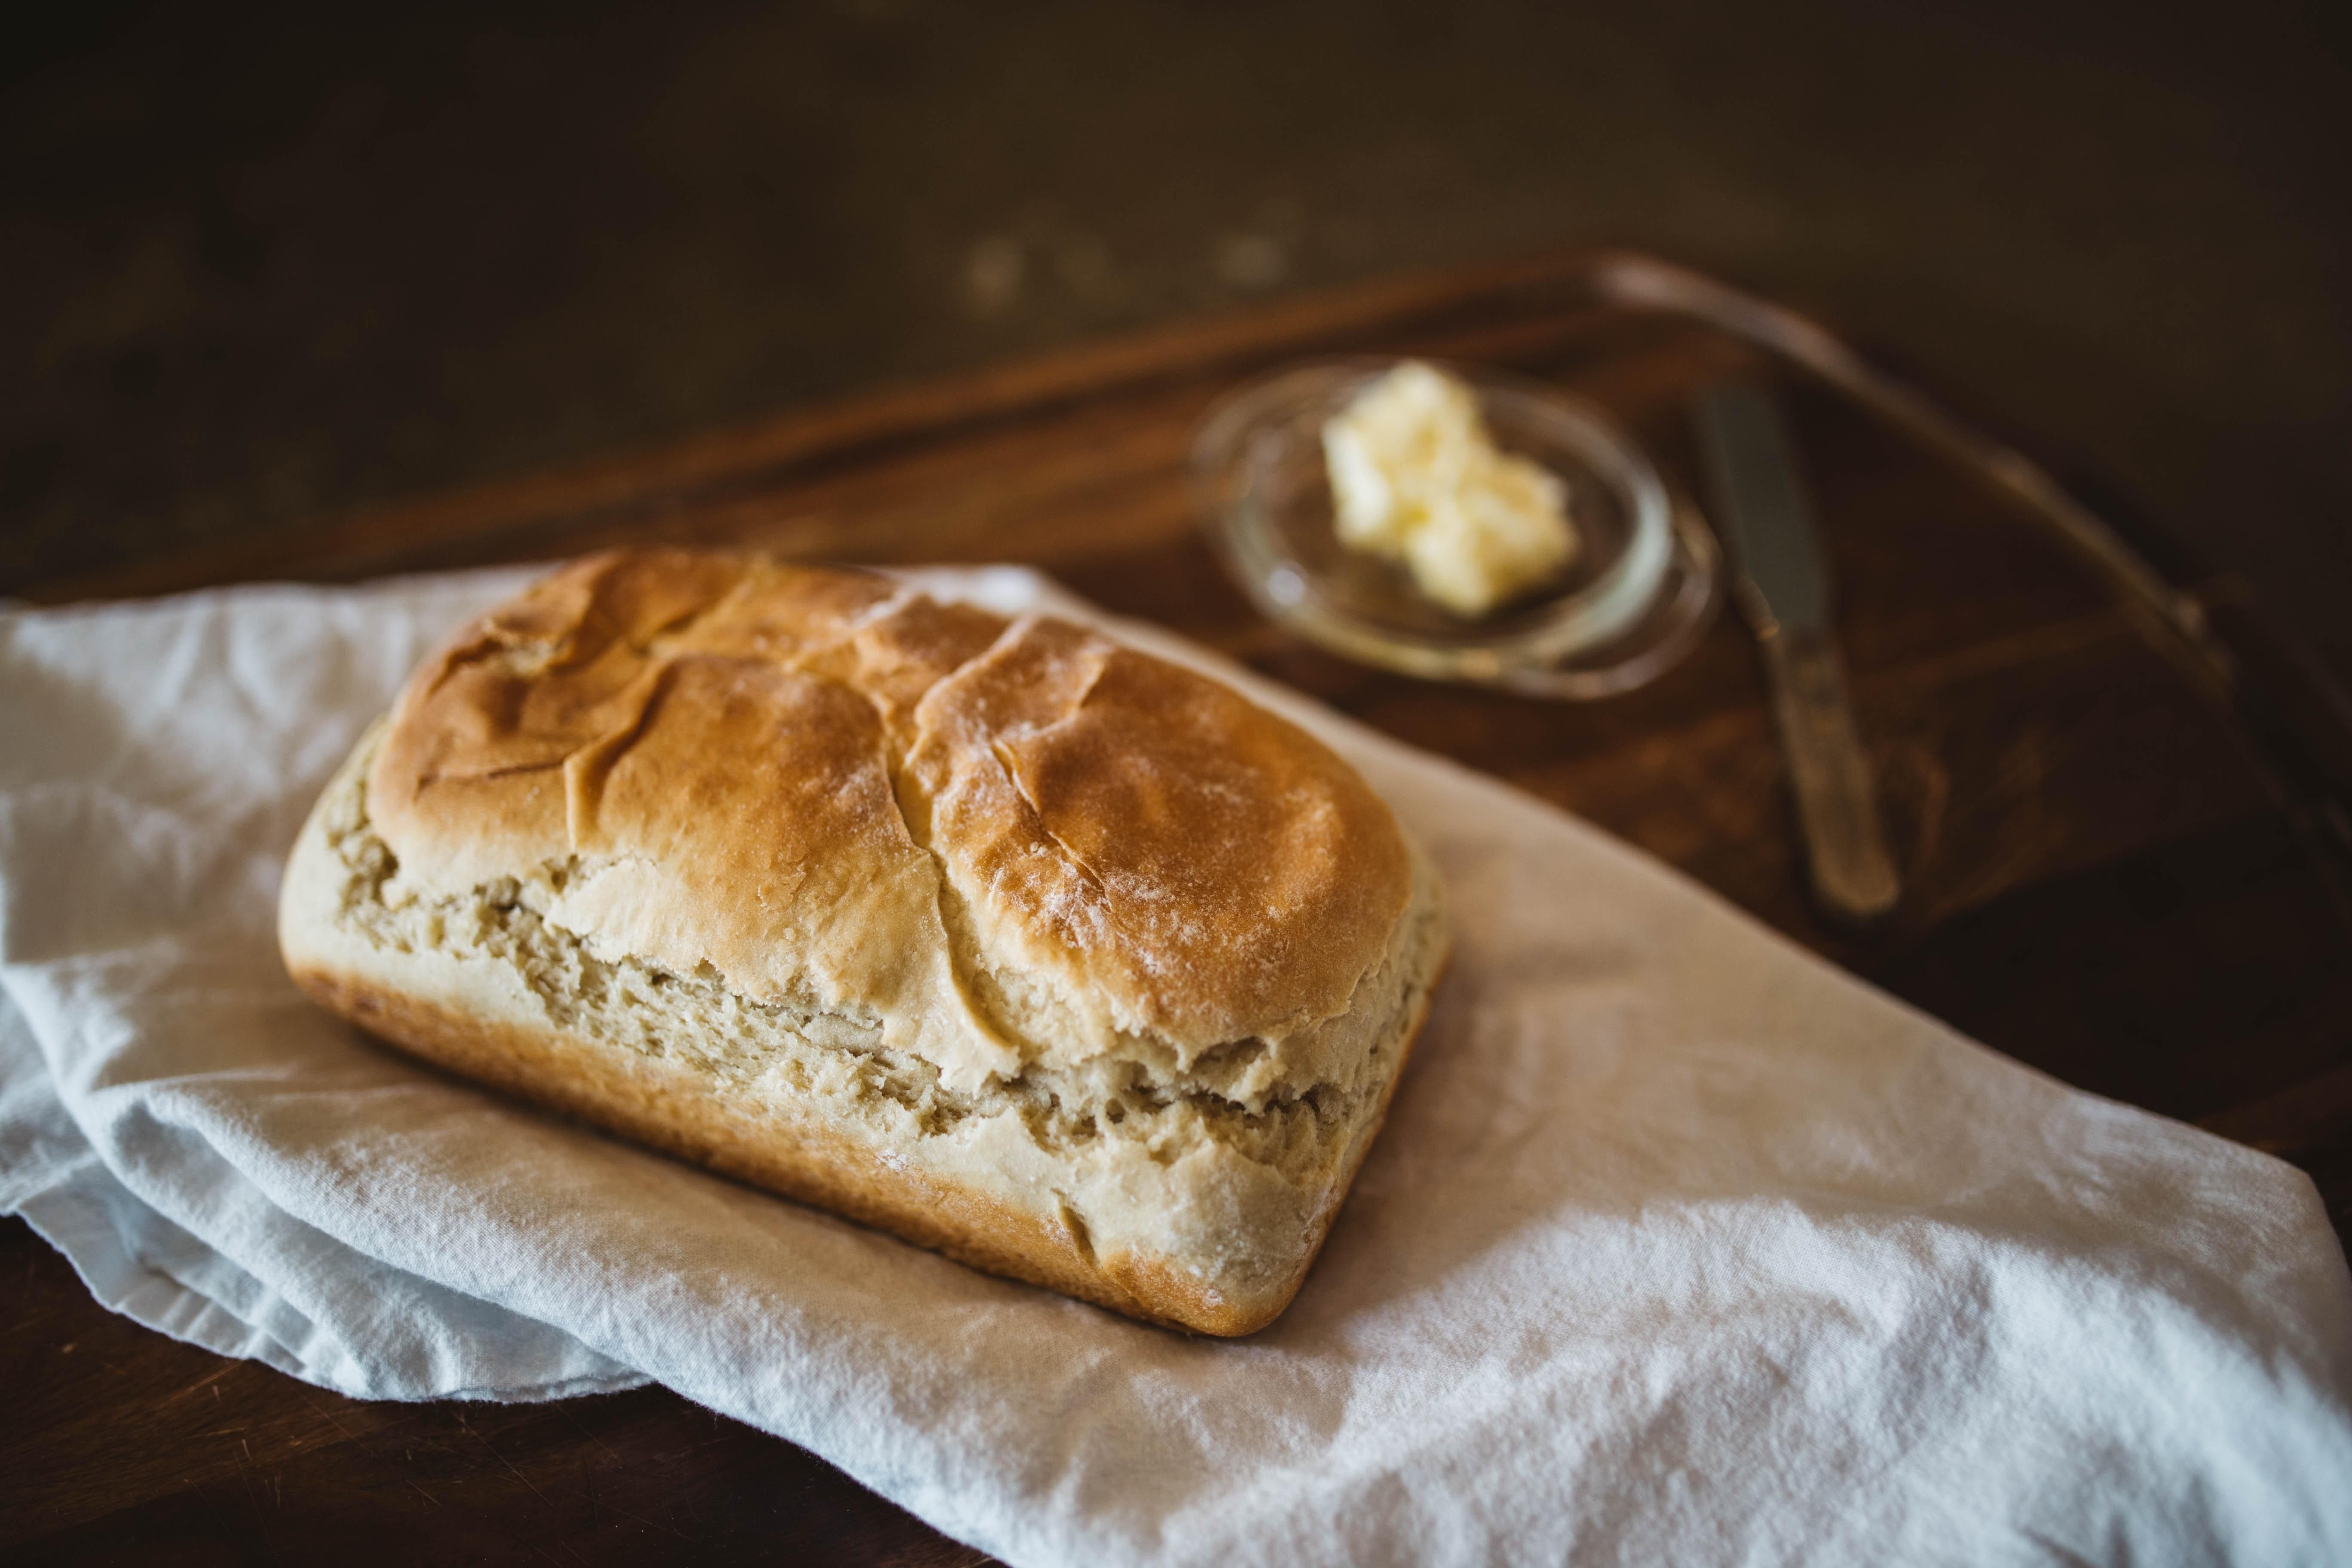 Как правильно заморозить хлеб, чтобы он был максимально свежим - Идеи